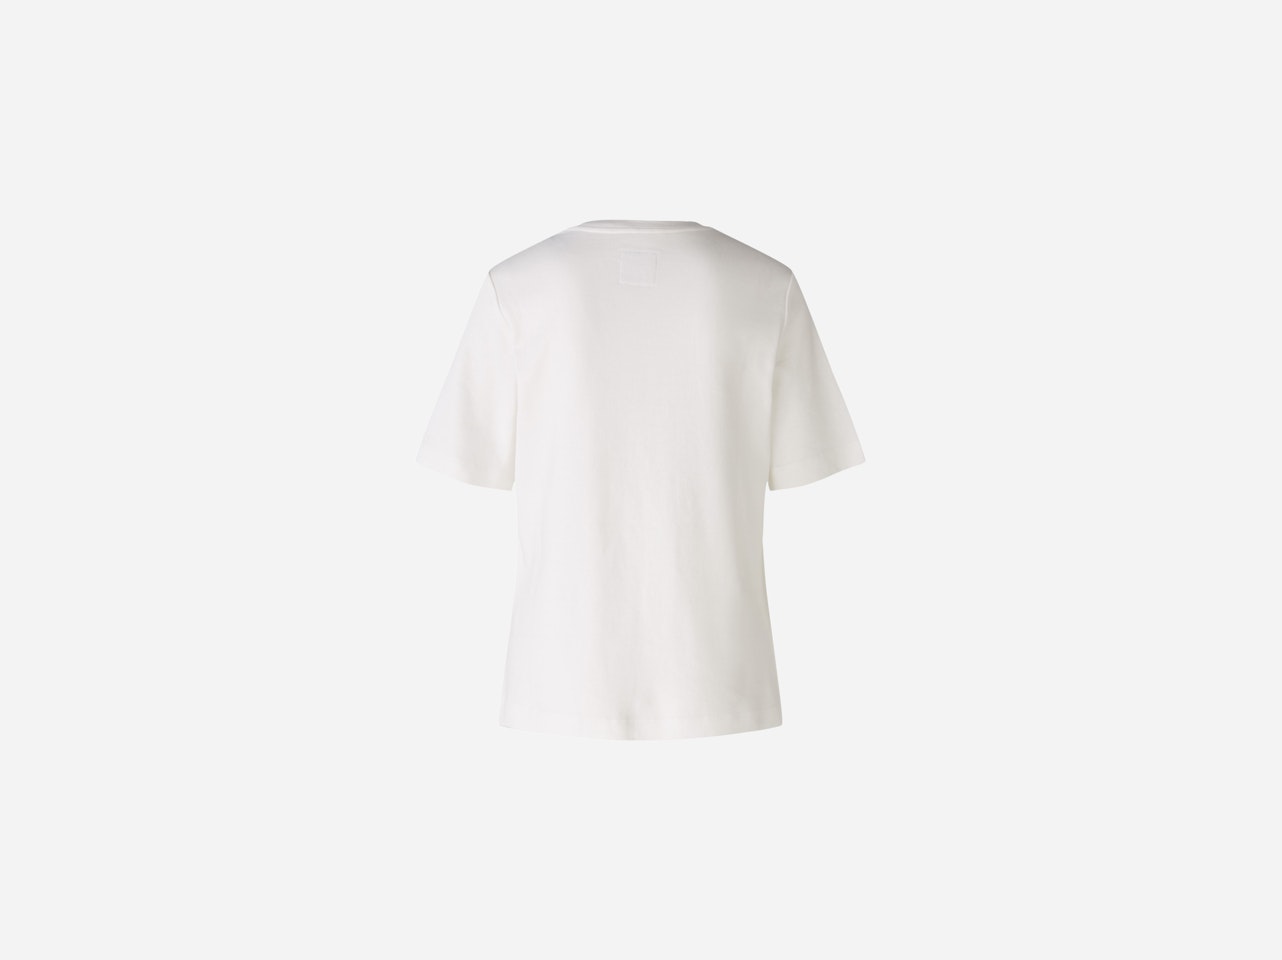 Bild 7 von T-shirt 100% cotton in cloud dancer | Oui